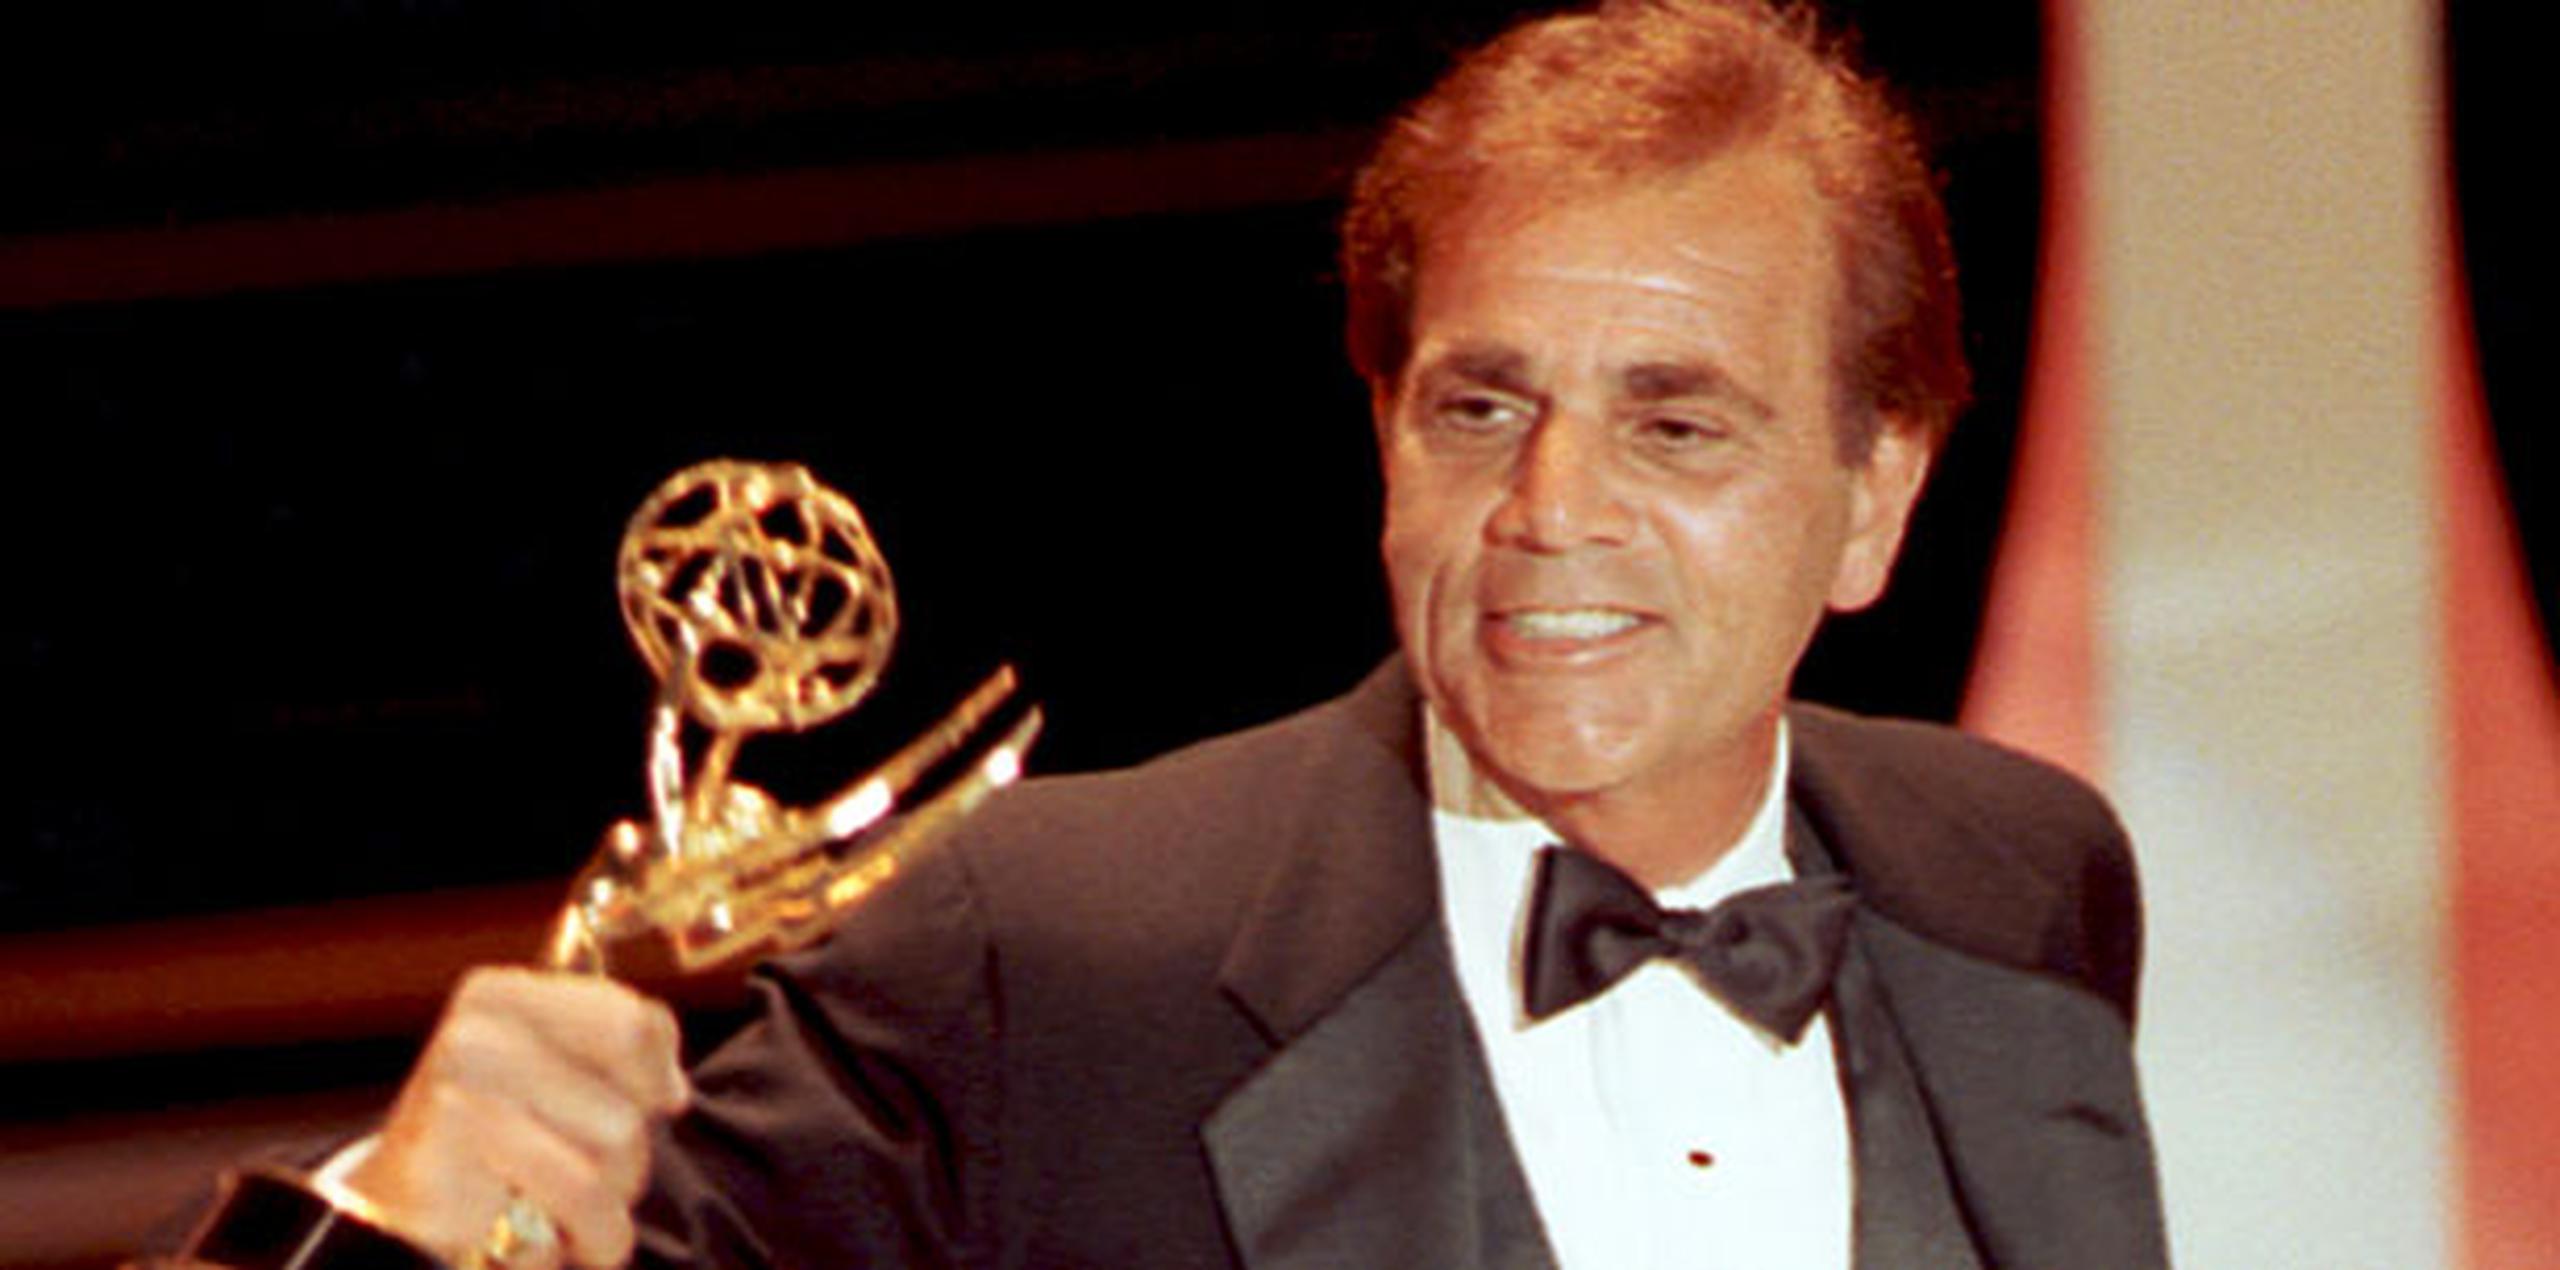 El actor ganó un Emmy en 1990 por su papel en la comedia de televisión "The famous Teddy B". (Archivo)